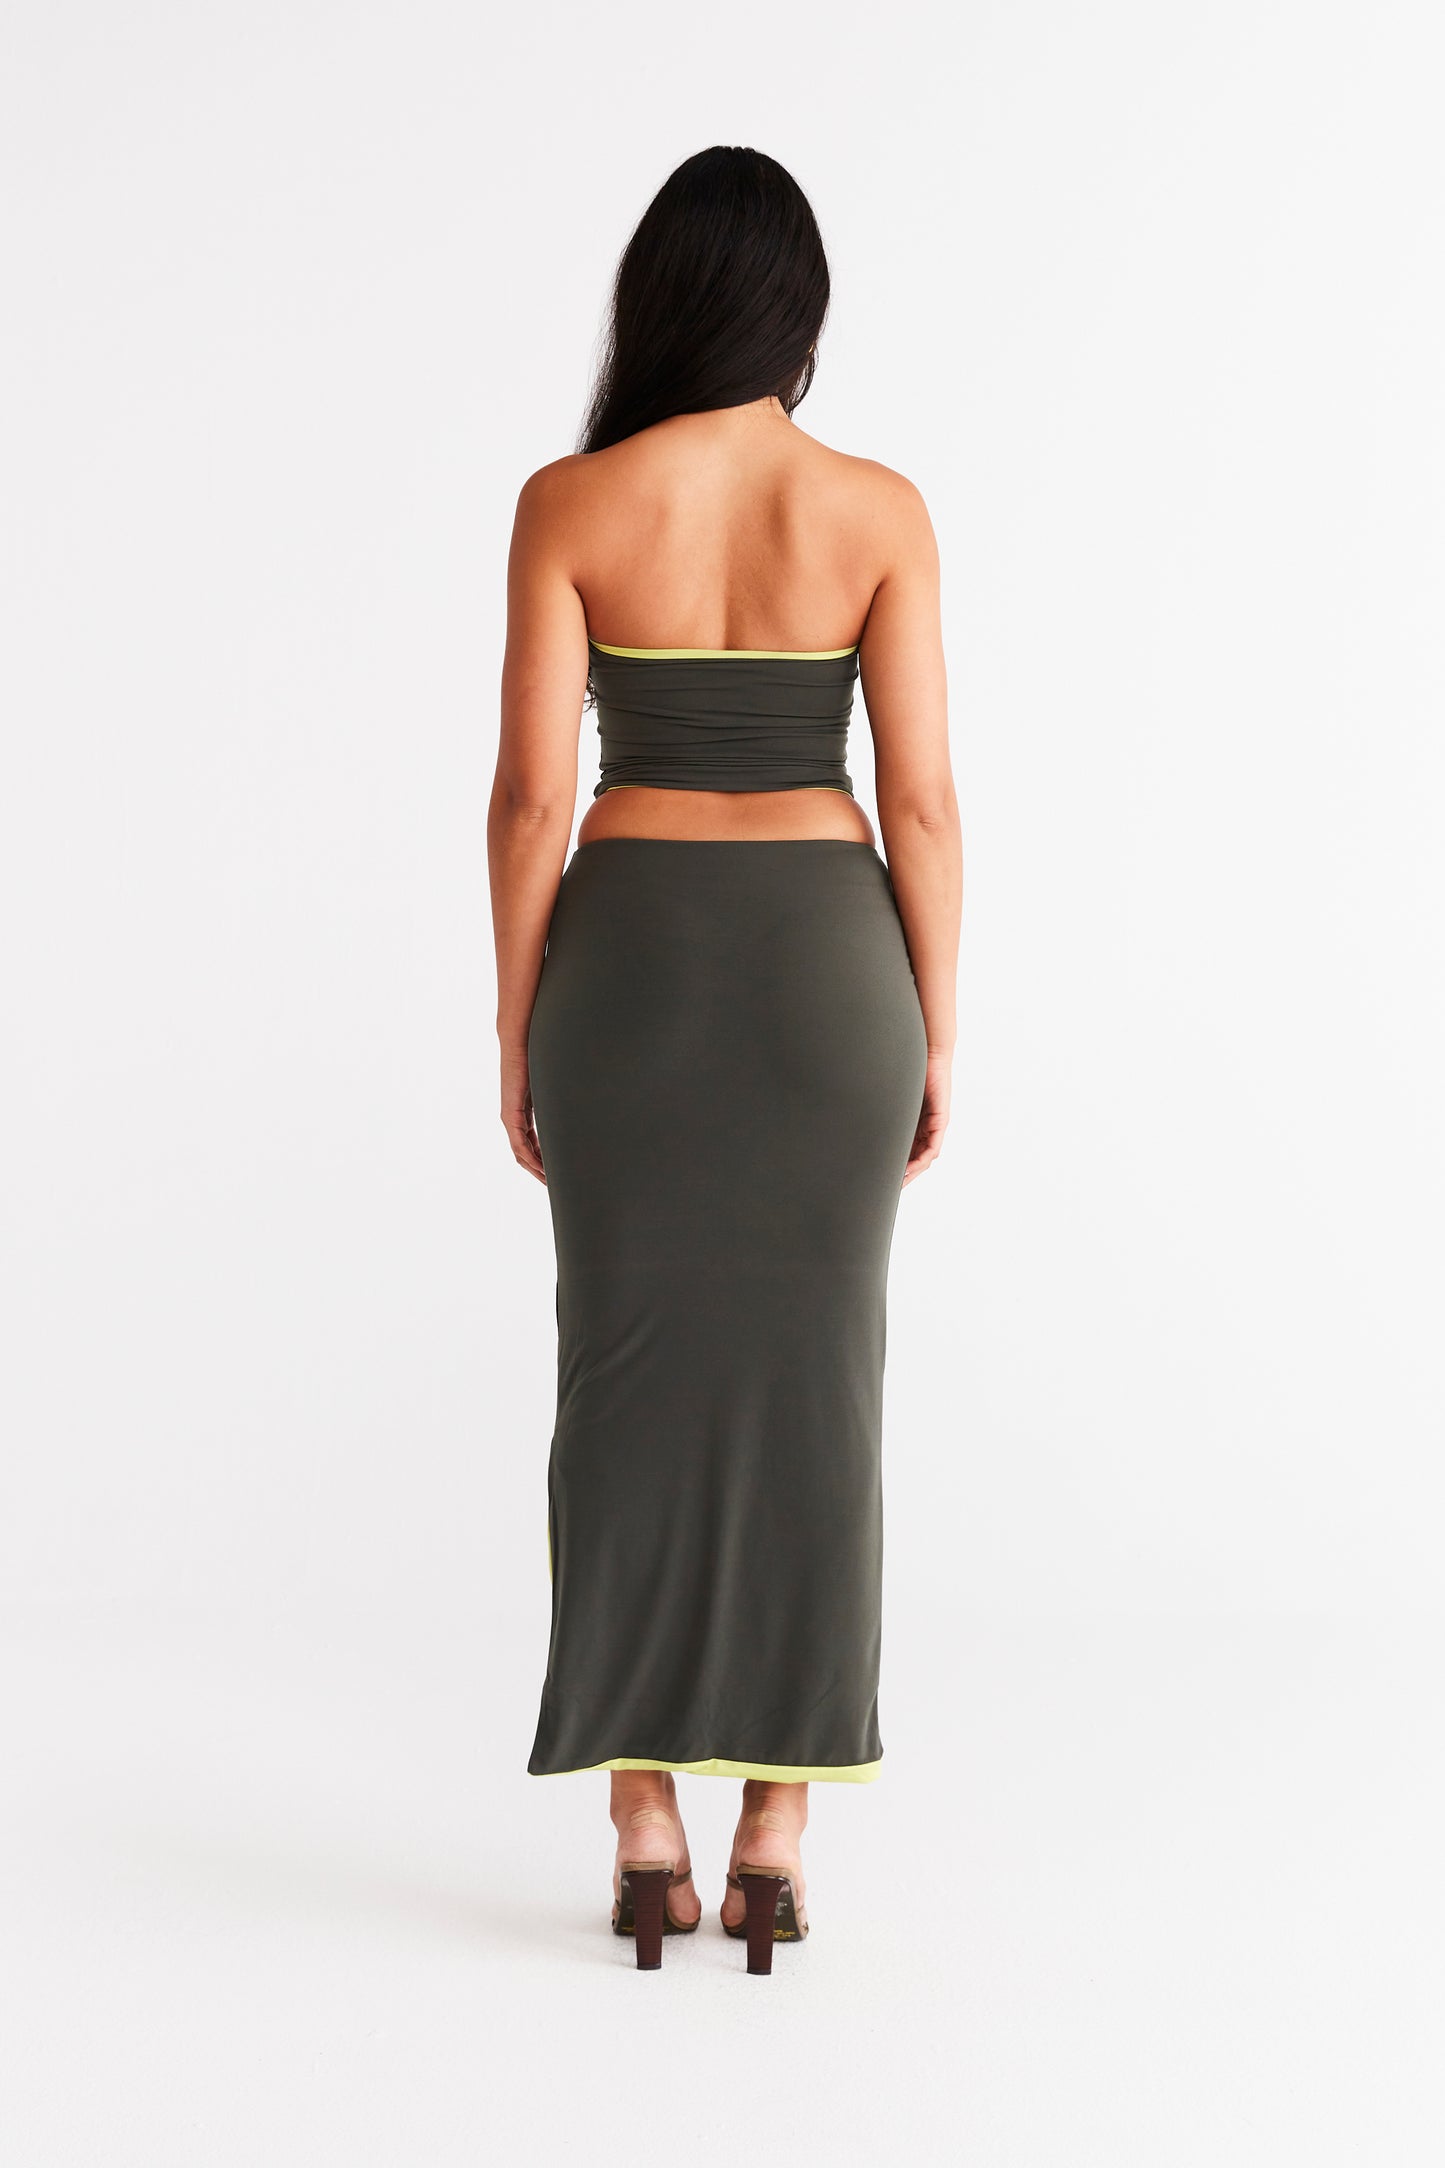 Nova Skirt - Khaki and Lime